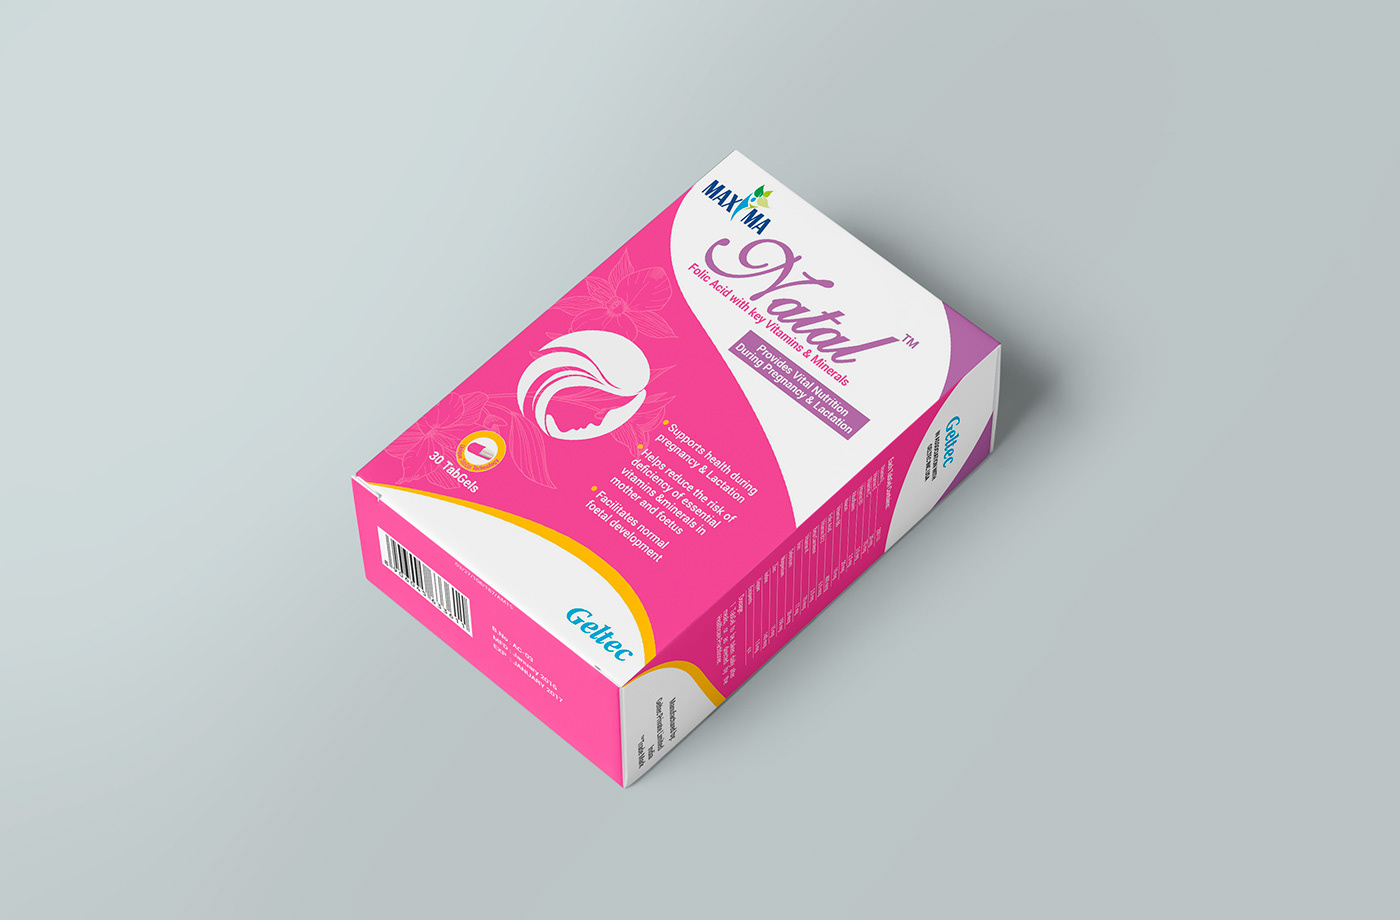 branding  Btl Geltec maxima package design  UAE